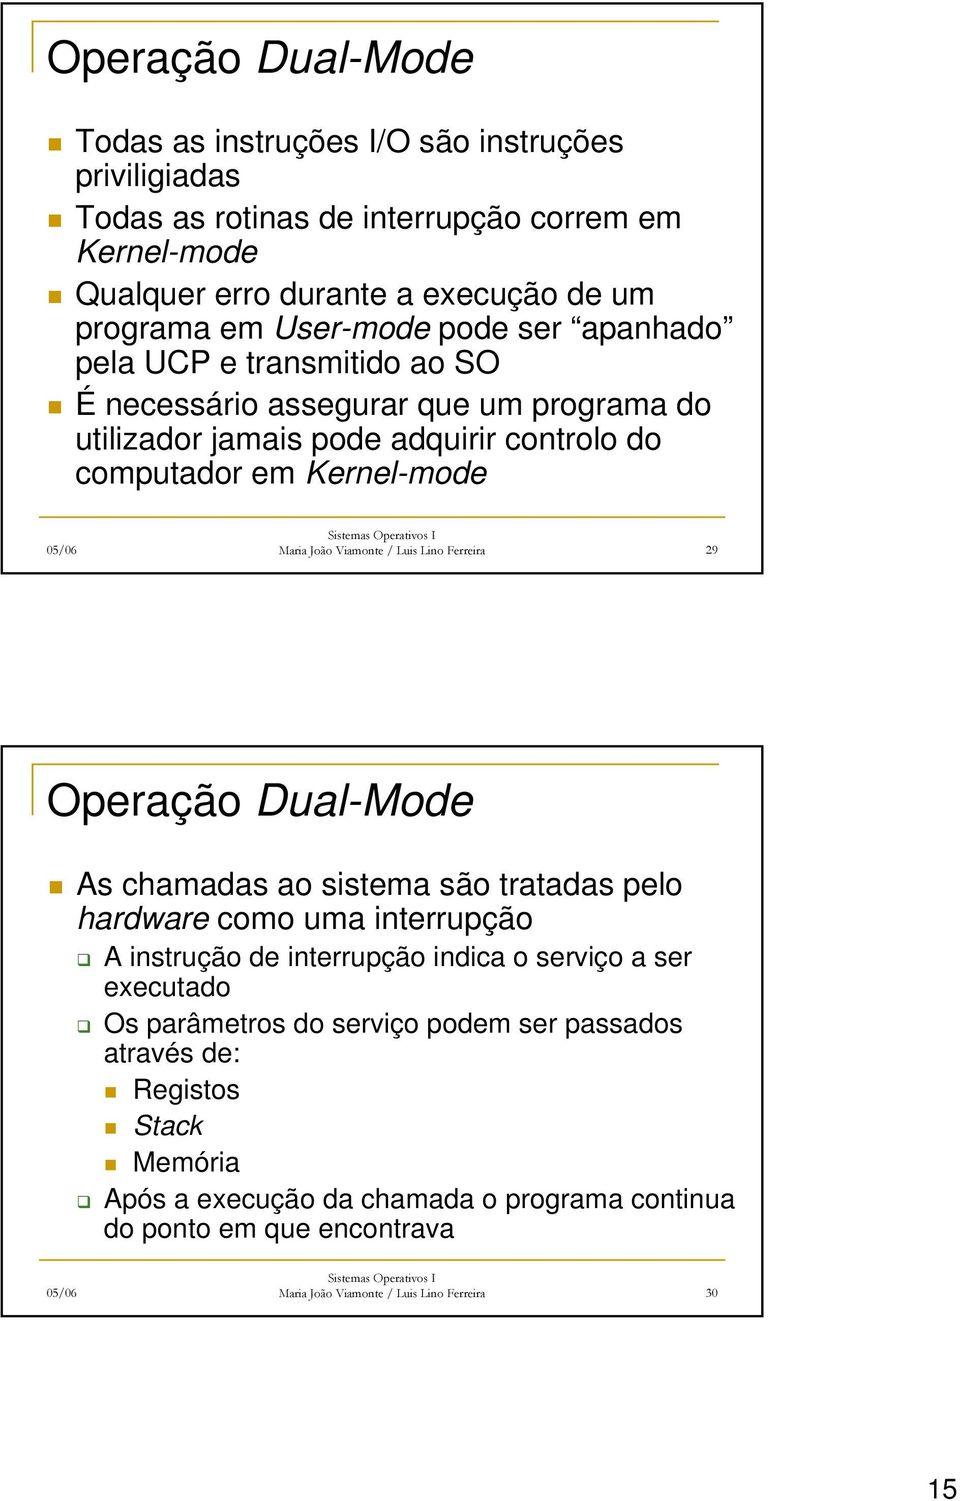 Viamonte / Luis Lino Ferreira 29 Operação Dual-Mode As chamadas ao sistema são tratadas pelo hardware como uma interrupção A instrução de interrupção indica o serviço a ser executado